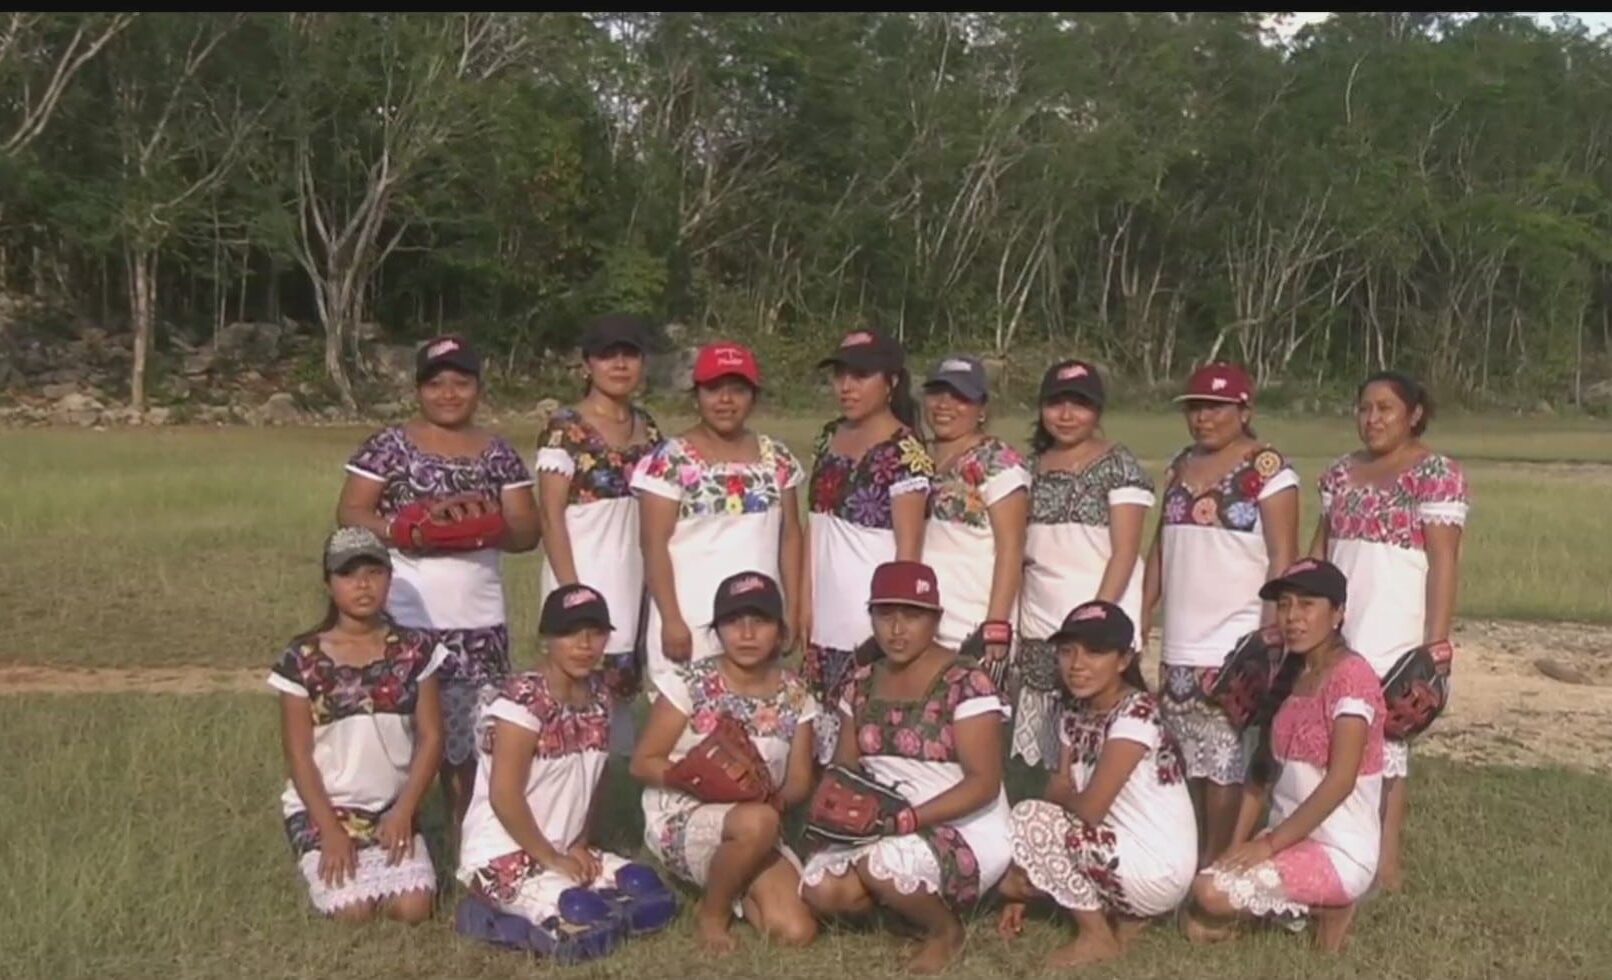 las diablitas equipo de softbol maya que rinde homenaje a sus raices